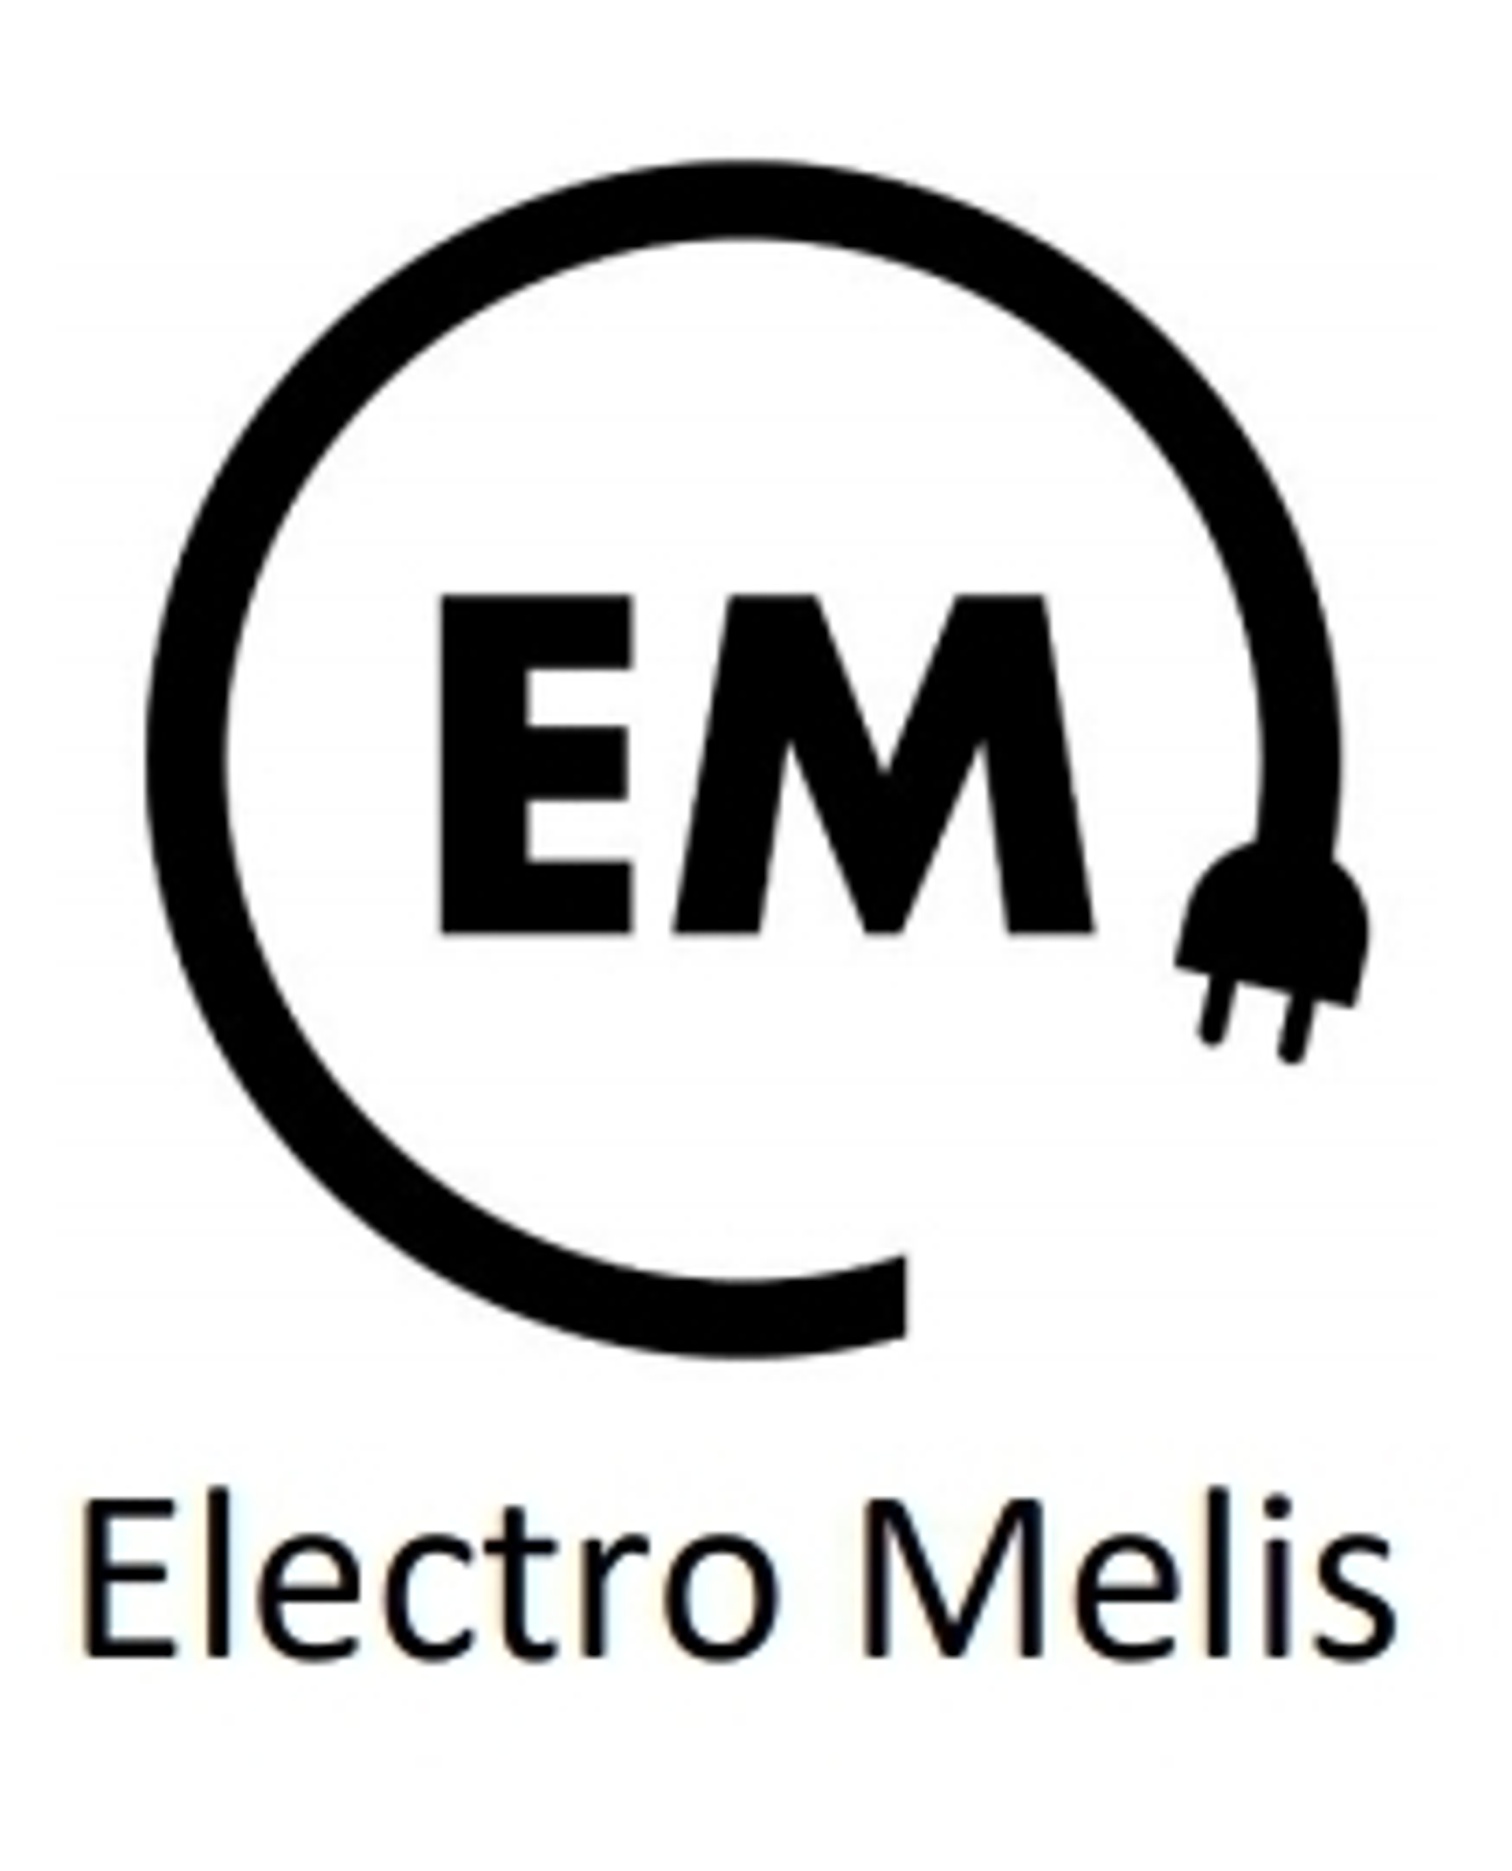 Electro Melis logo